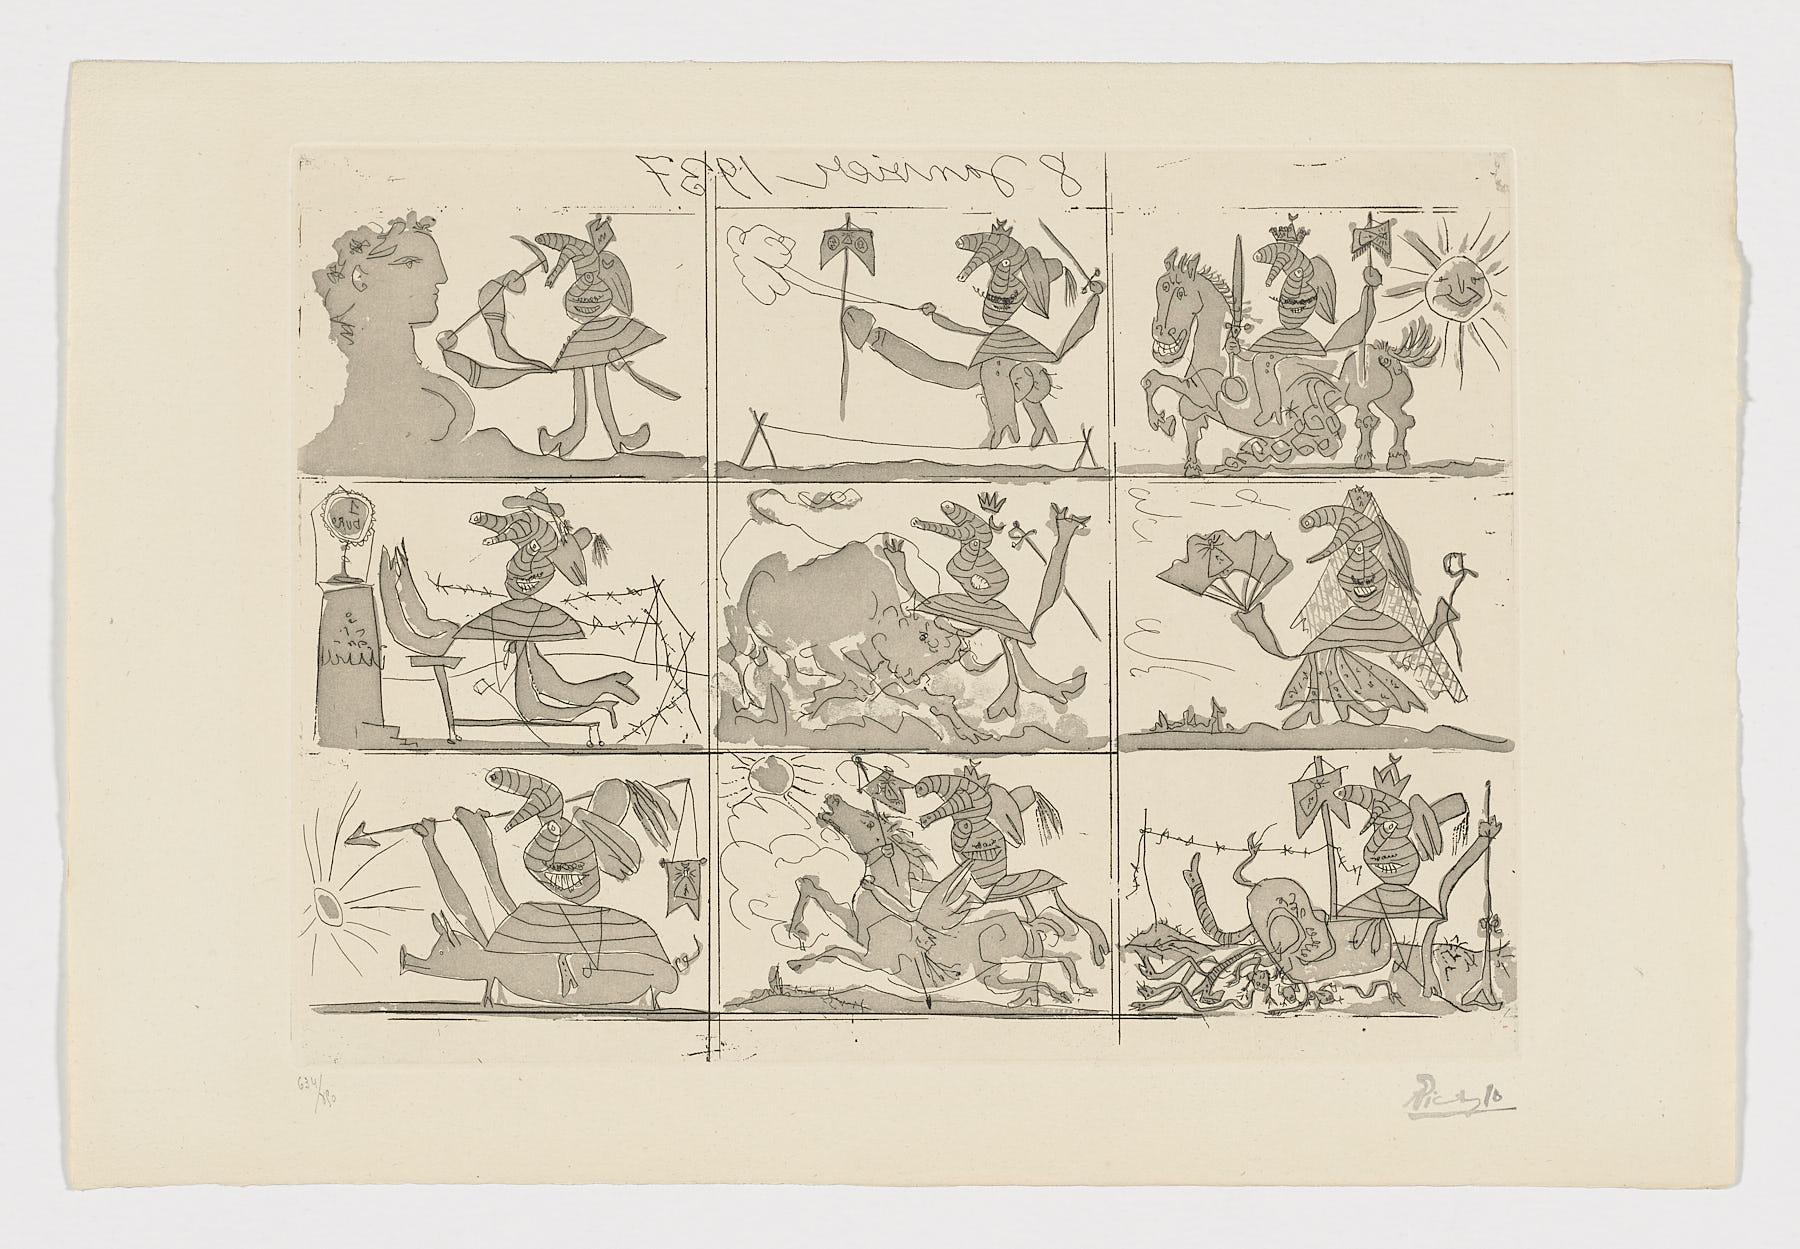 Spanische signierte Original-Kunstdruck-Radierung in limitierter Auflage von Pablo Ruiz Picasso